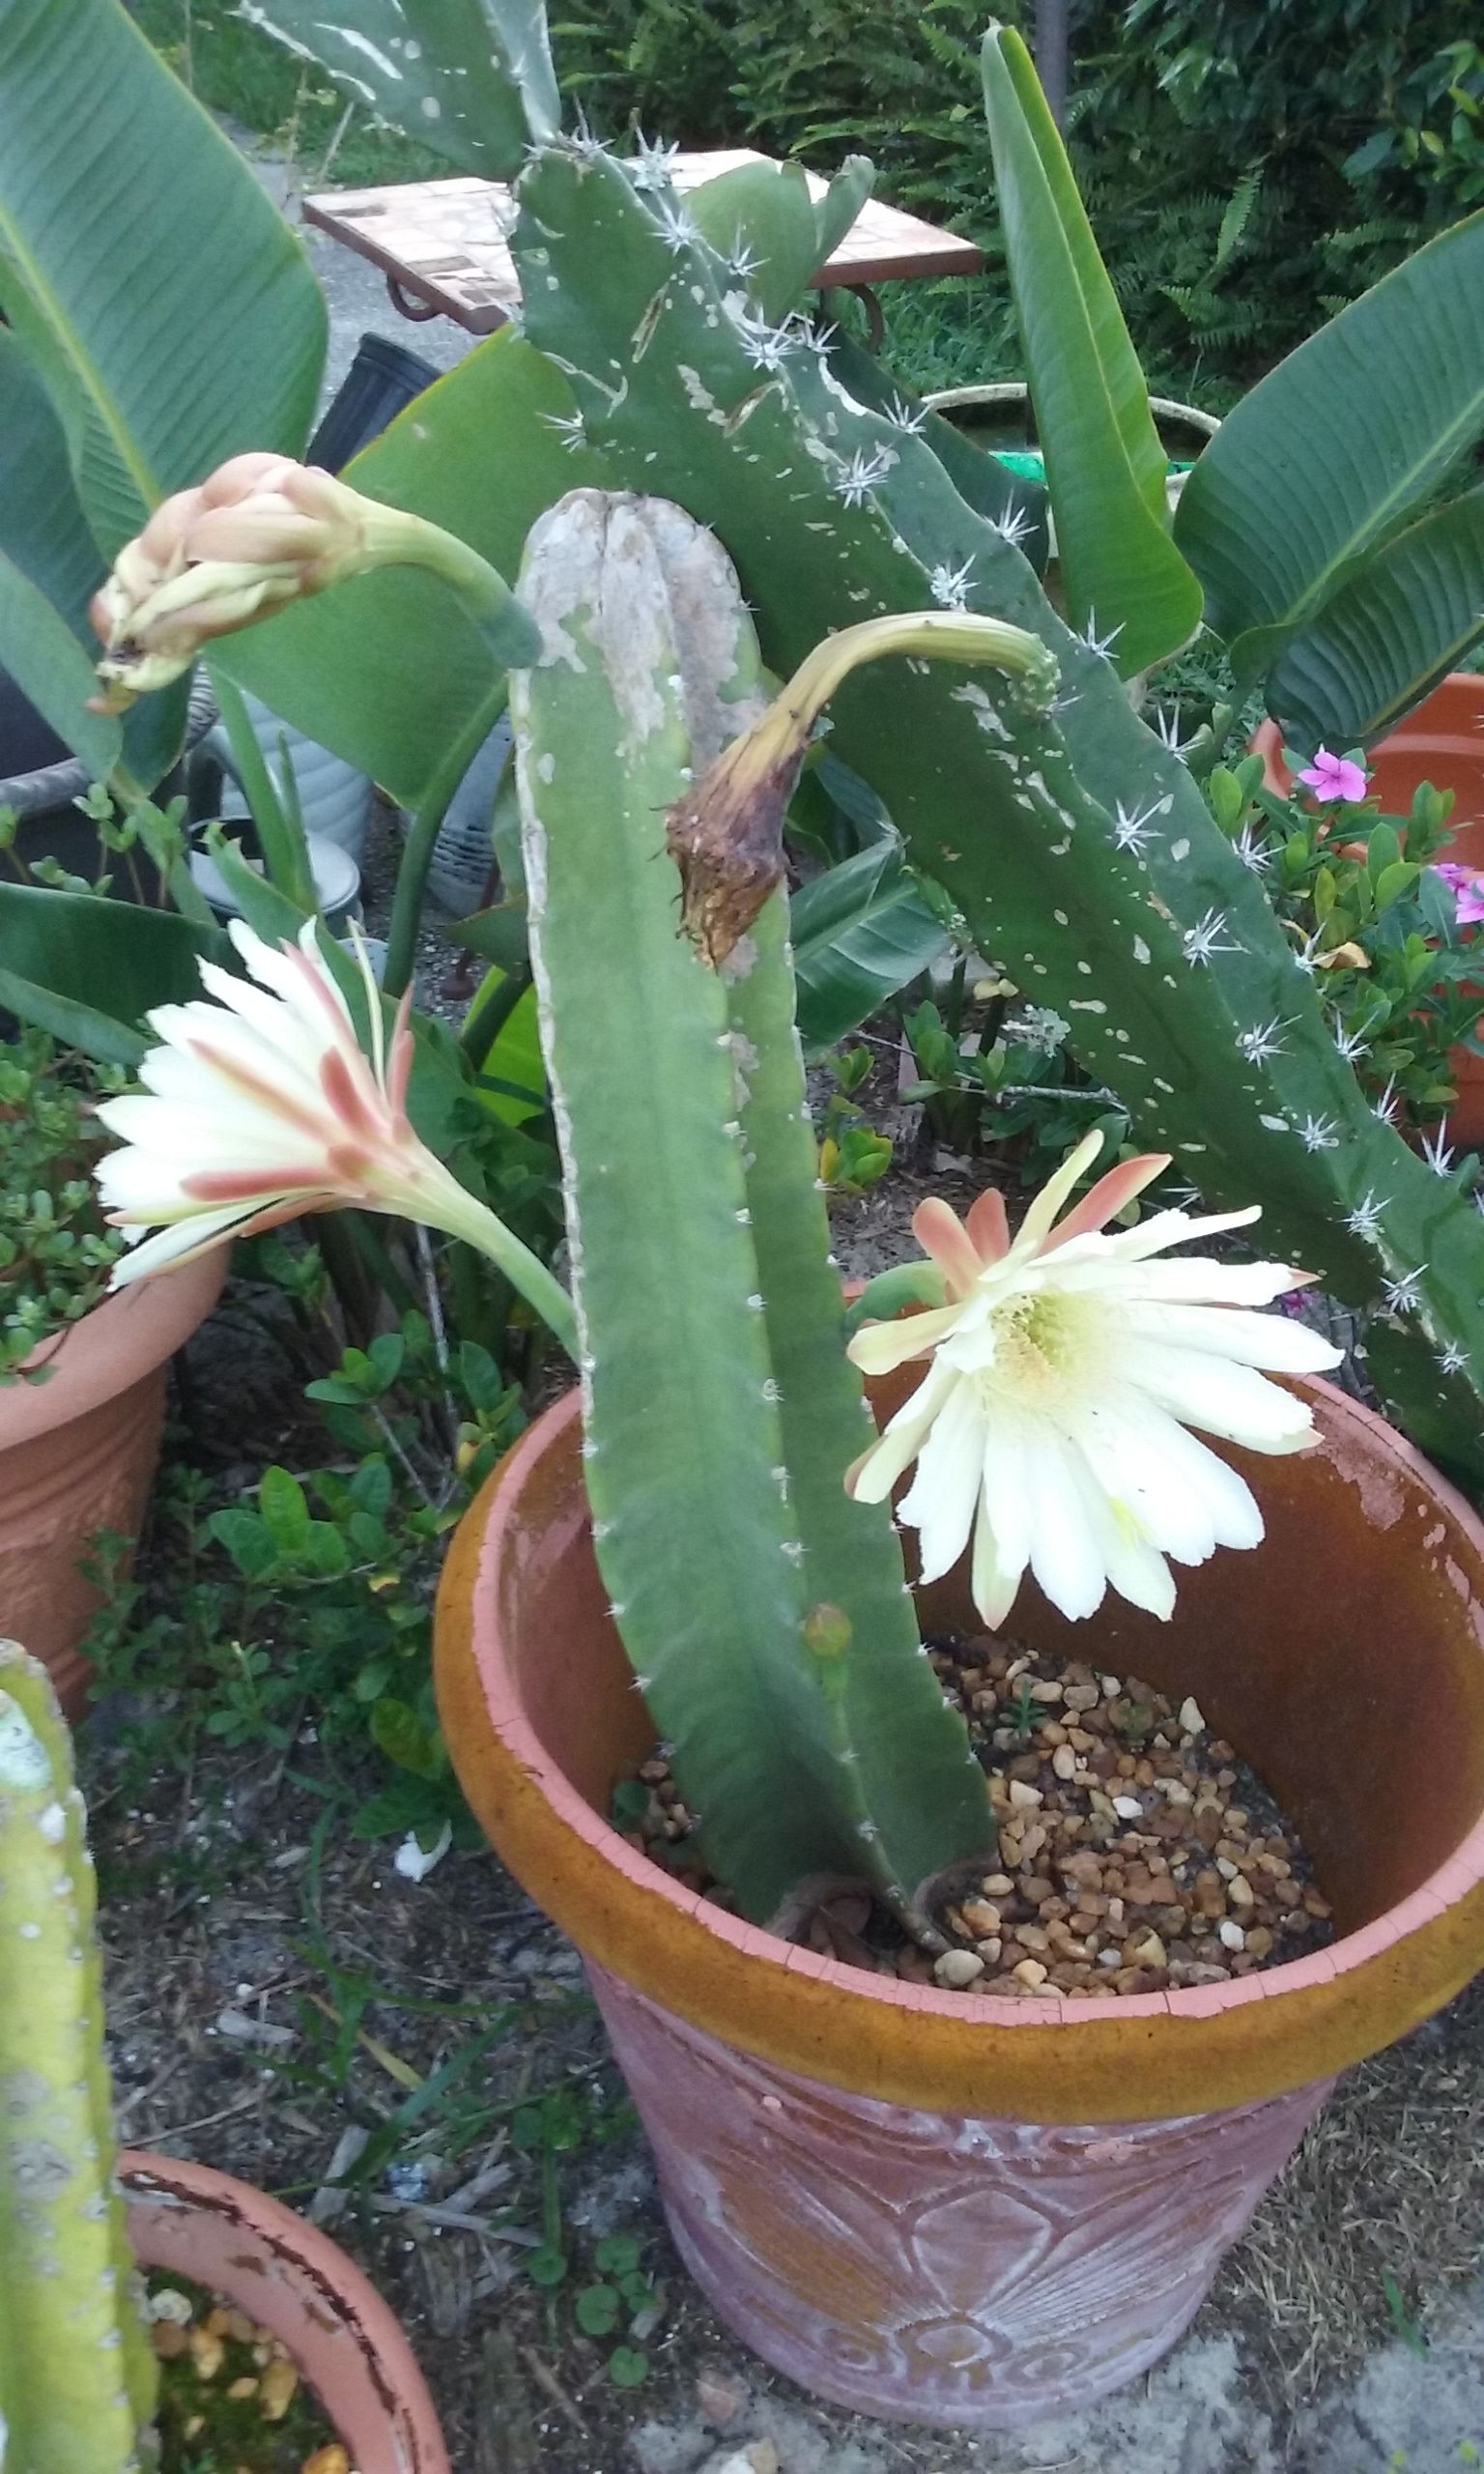 3 Flowering Cactus in Pots